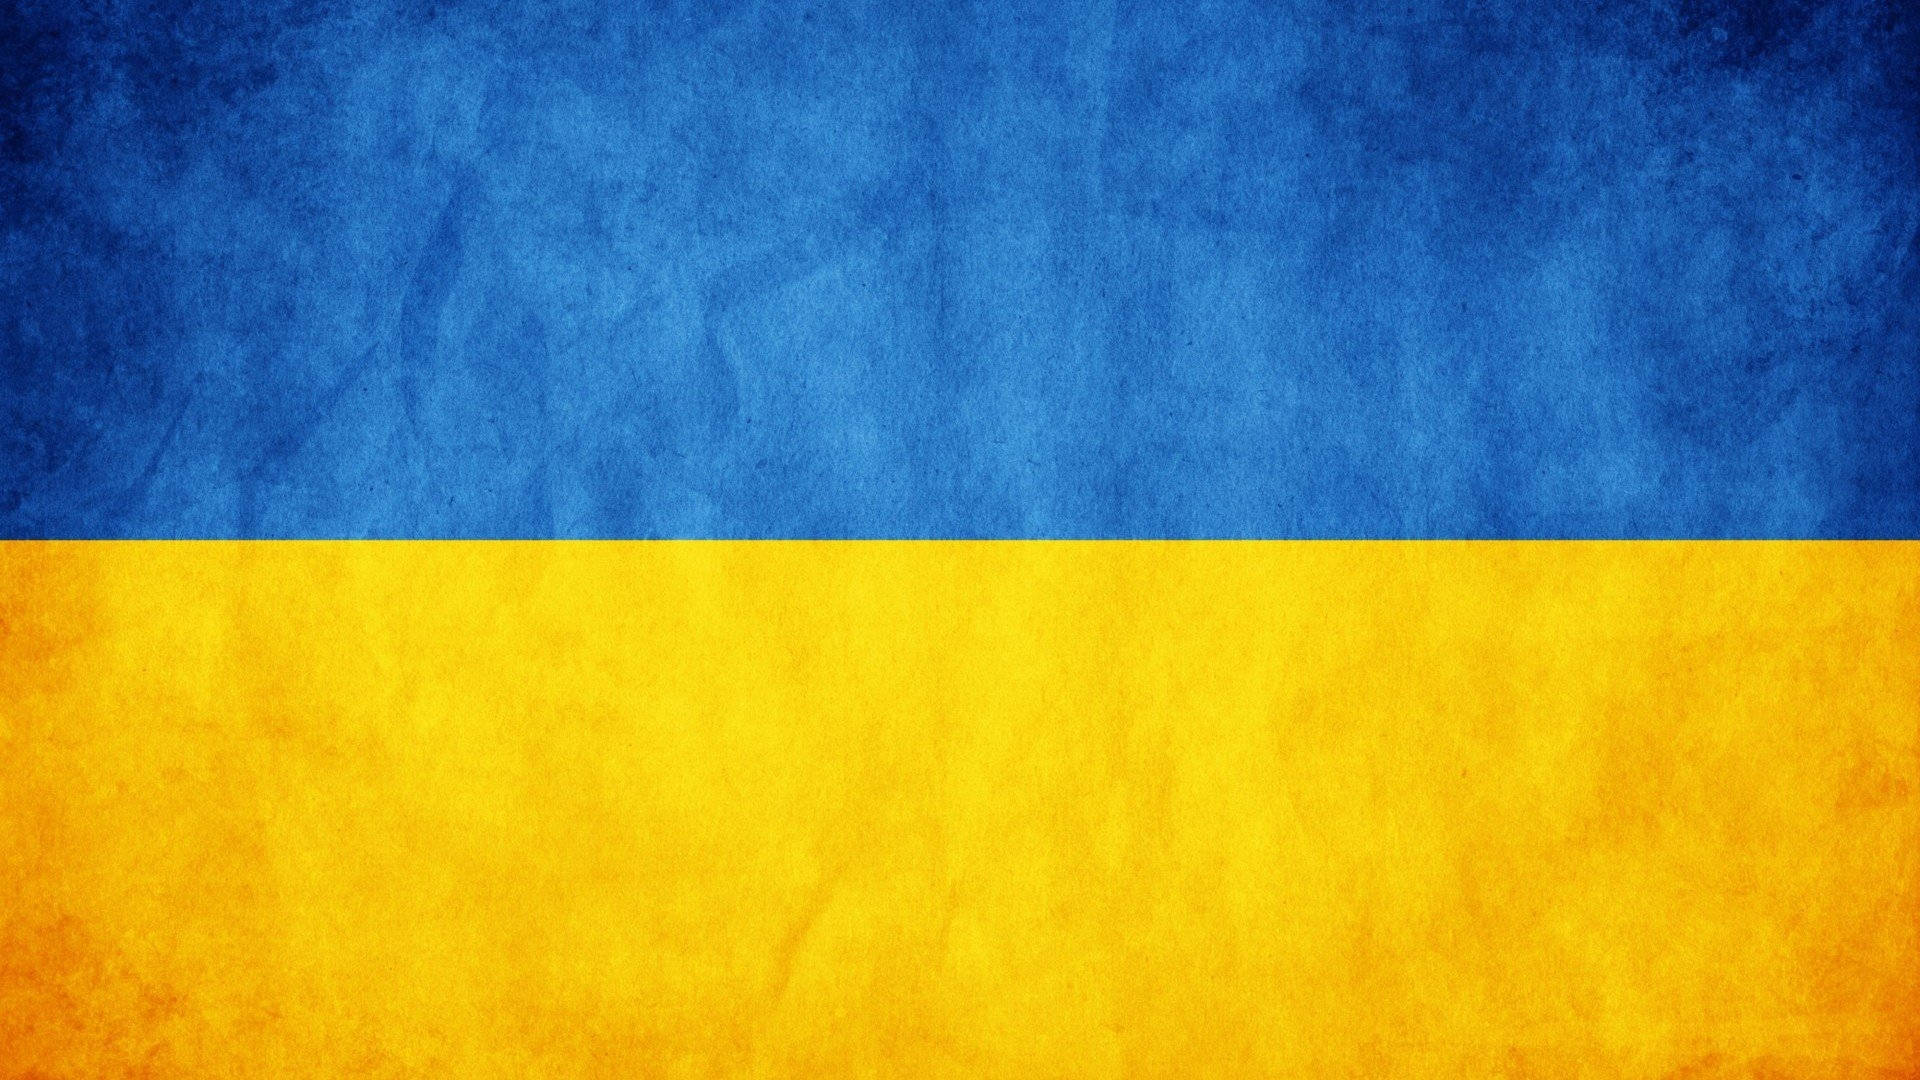 Vibrant National Flag Of Ukraine